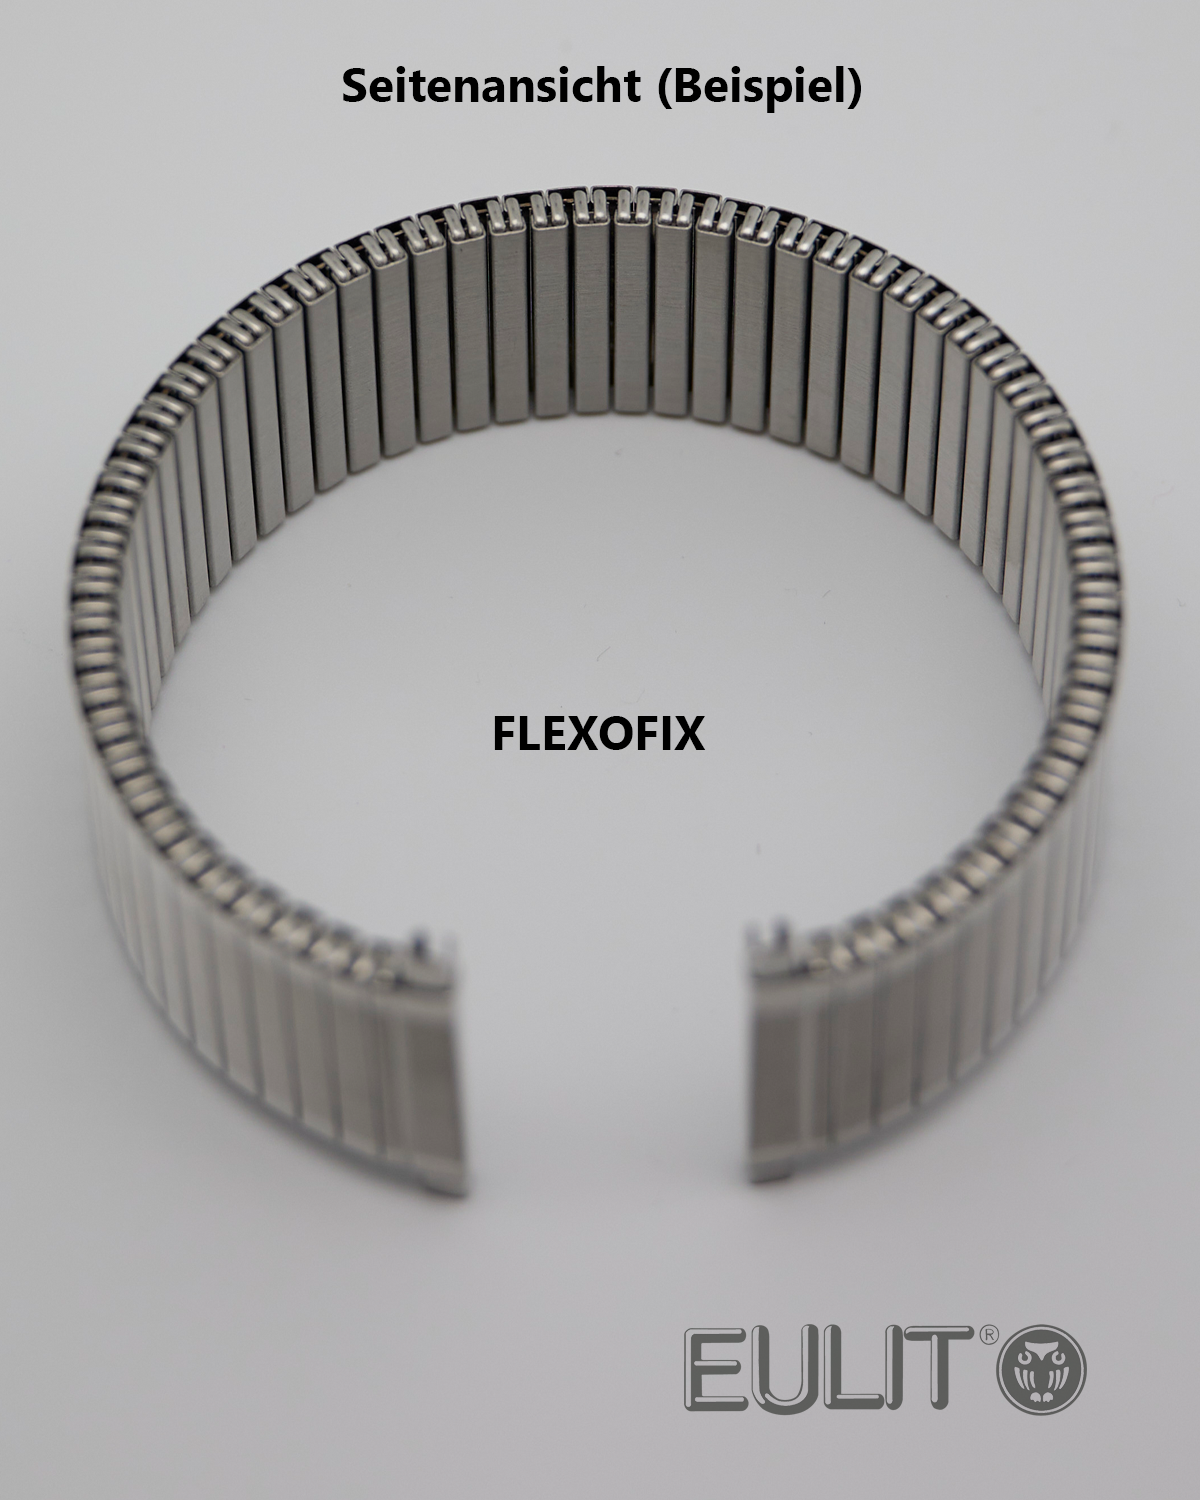 76-410003 EULIT FLEXOFIX 18-20 mm Edelstahl